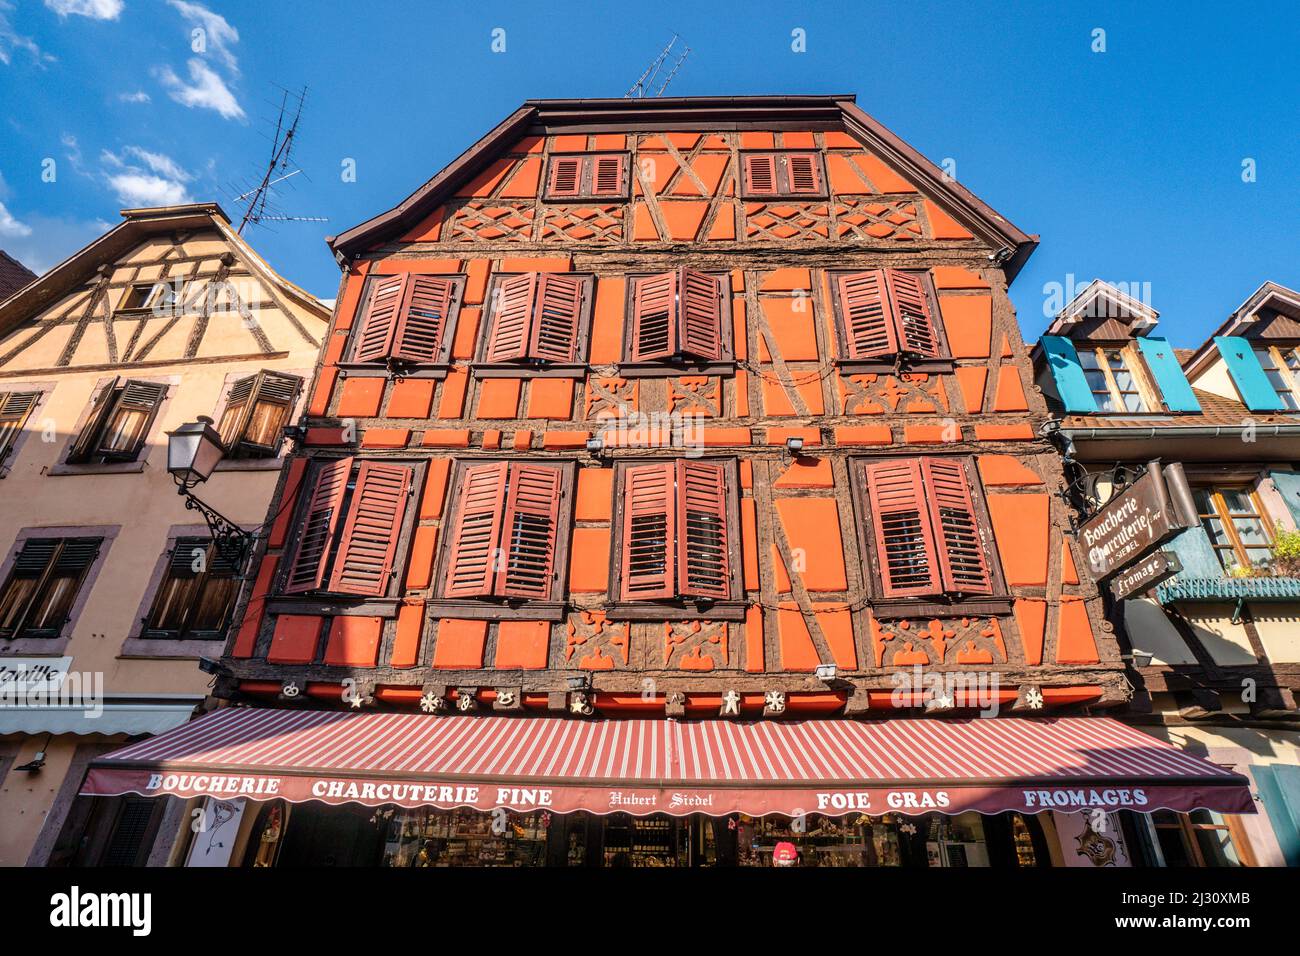 Ancienne maison à colombages, Ribeauville, Alsace, France Banque D'Images